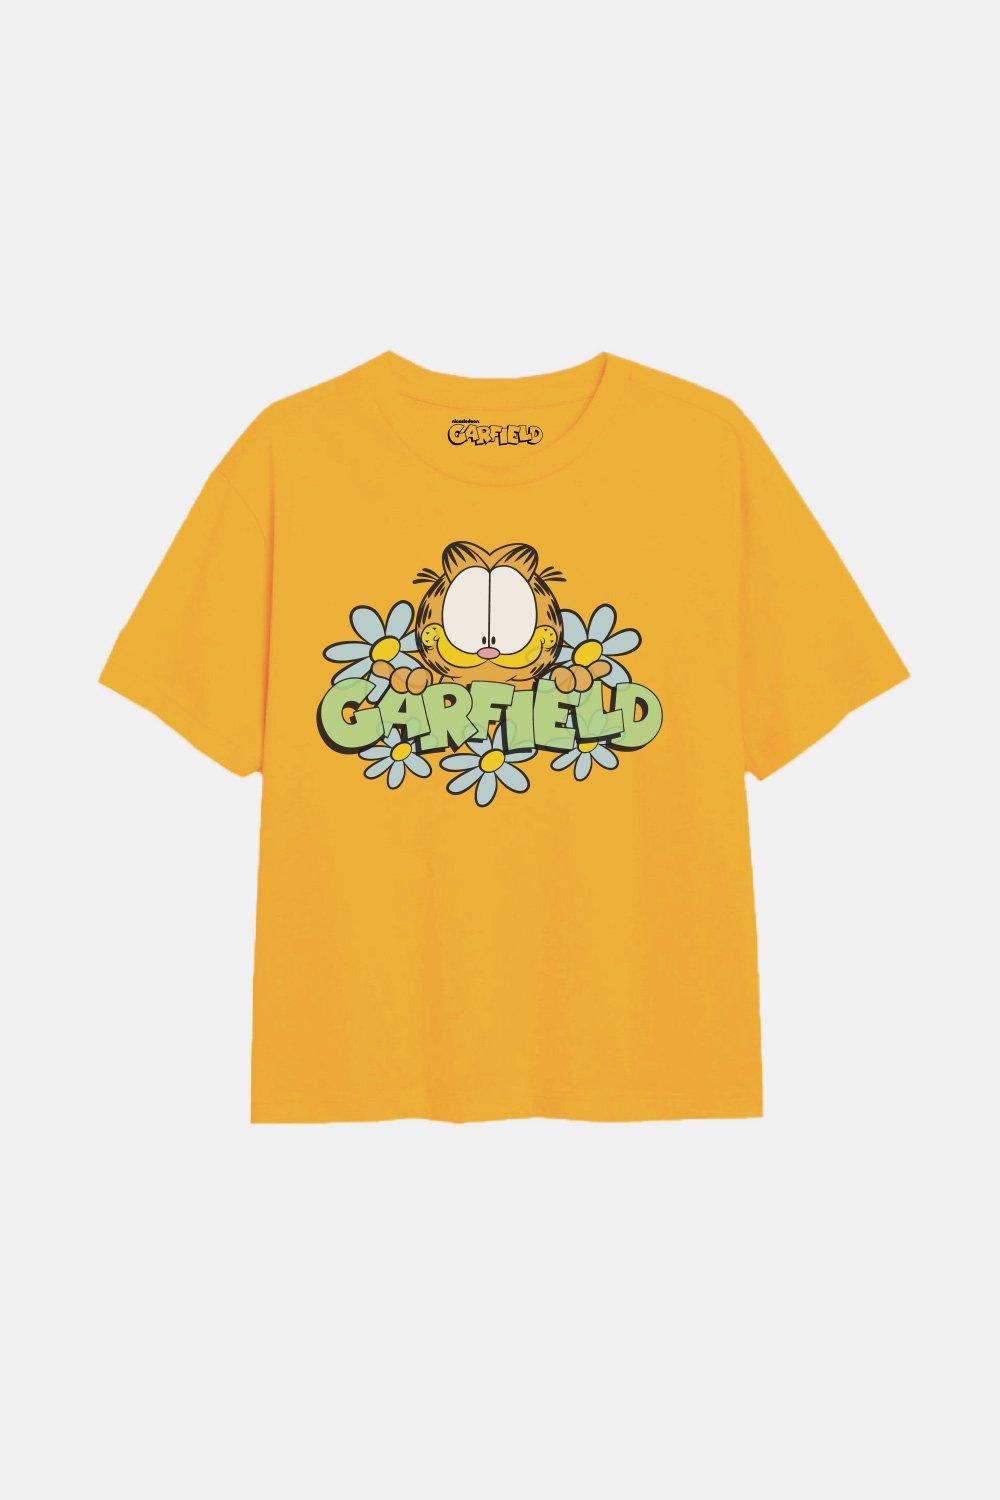 Футболка для девочек Flower Power Garfield, желтый футболка для девочек flower power garfield желтый